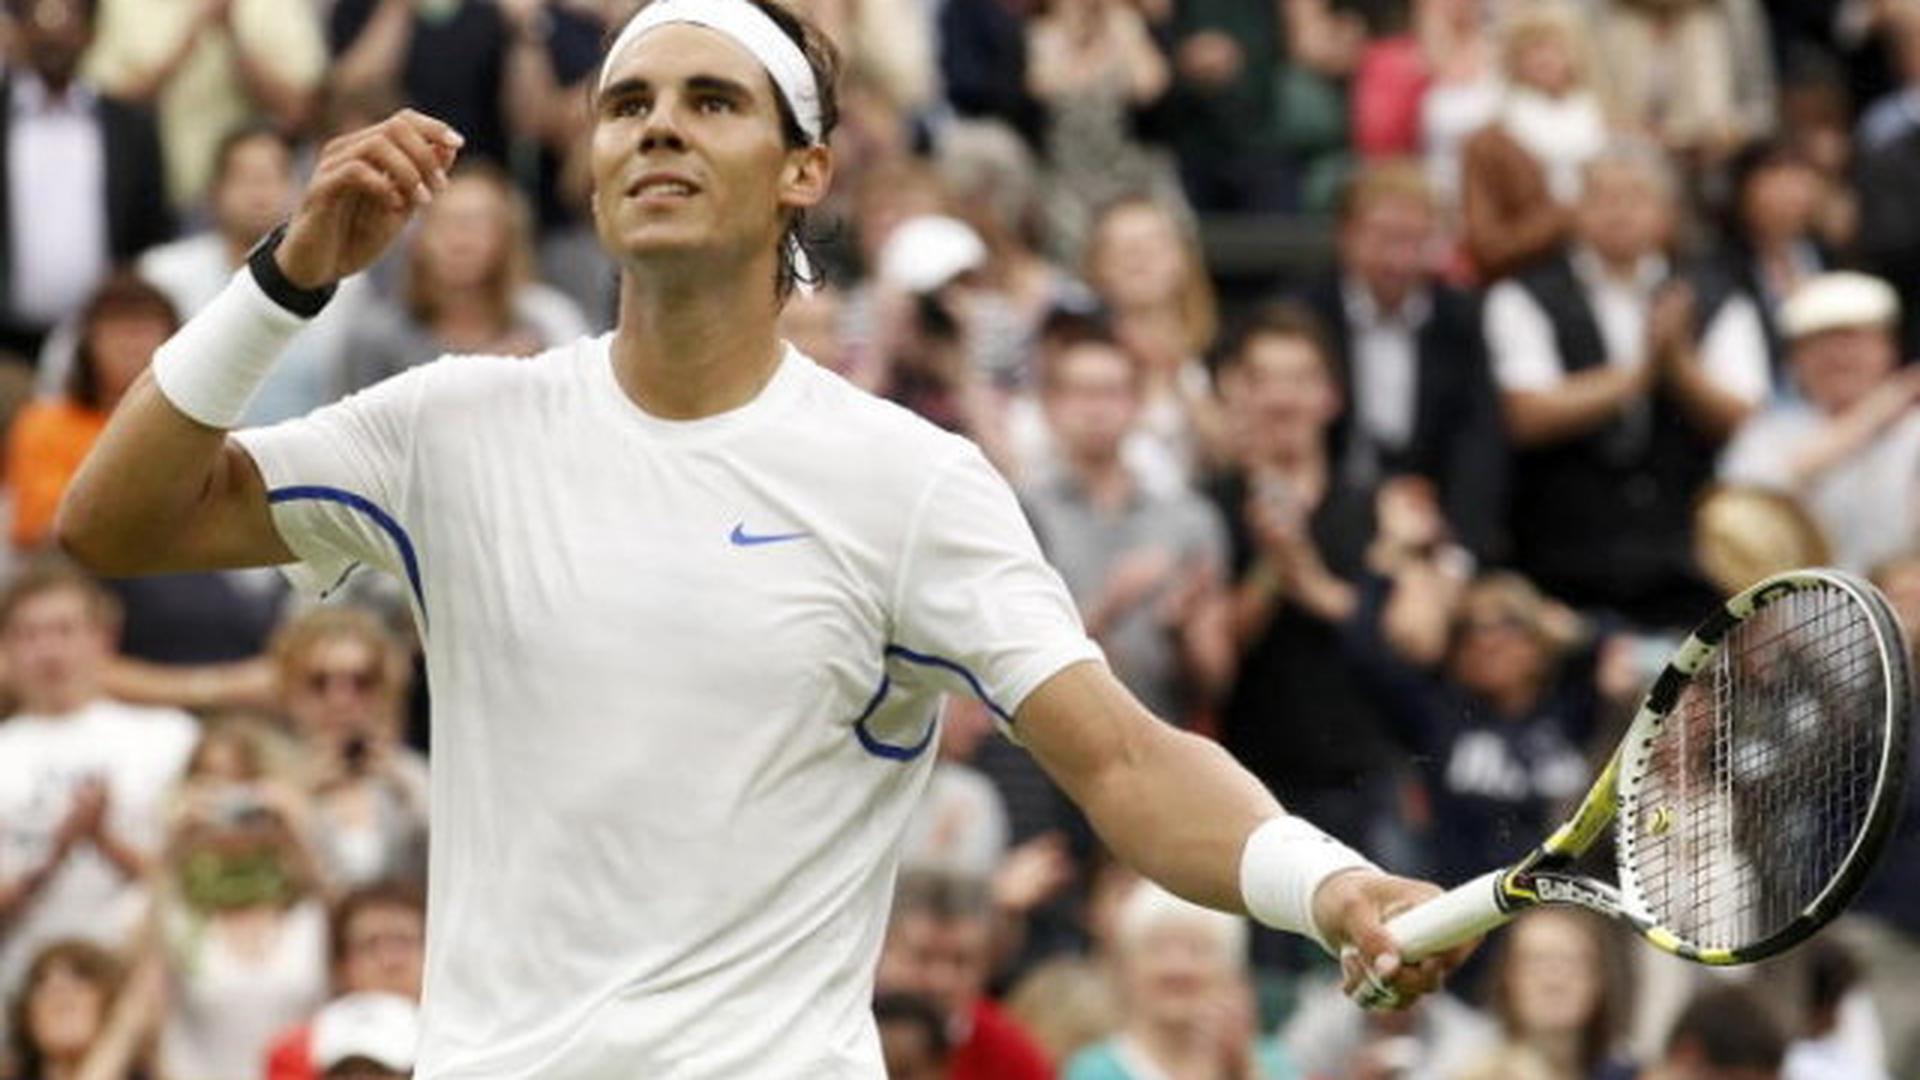 Le n°1 mondial Rafael Nadal retrouvera au troisième tour de Wimbledon un Gilles Muller qui... l'avait battu en 2005